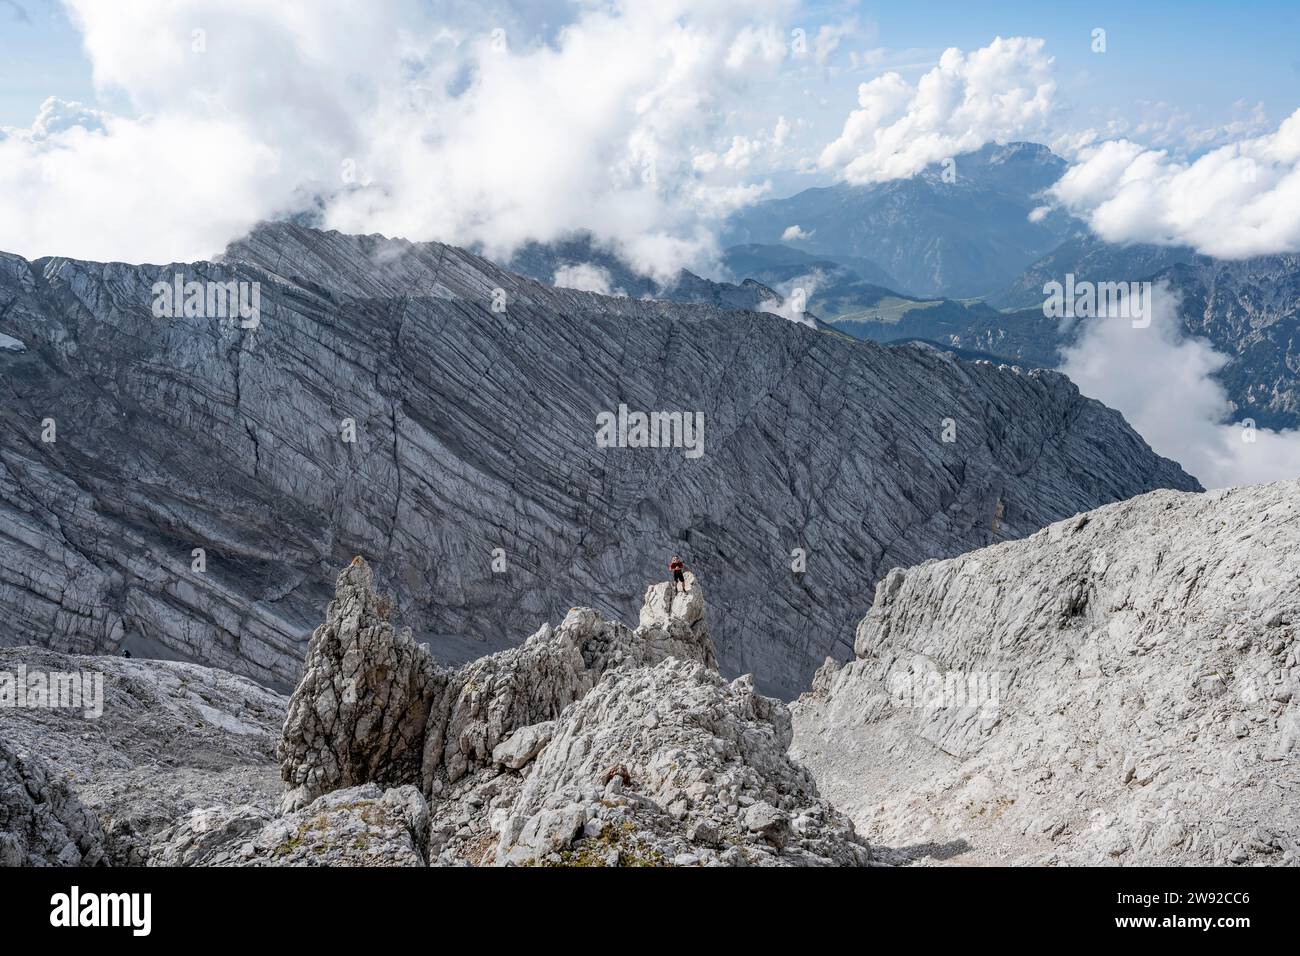 Alpinista sulla cima rocciosa, discesa a Ofentalscharte, dietro la parete rocciosa di Ofentalschneid, tour in montagna fino alla cima dell'Hochkalter, Hochkalter Foto Stock